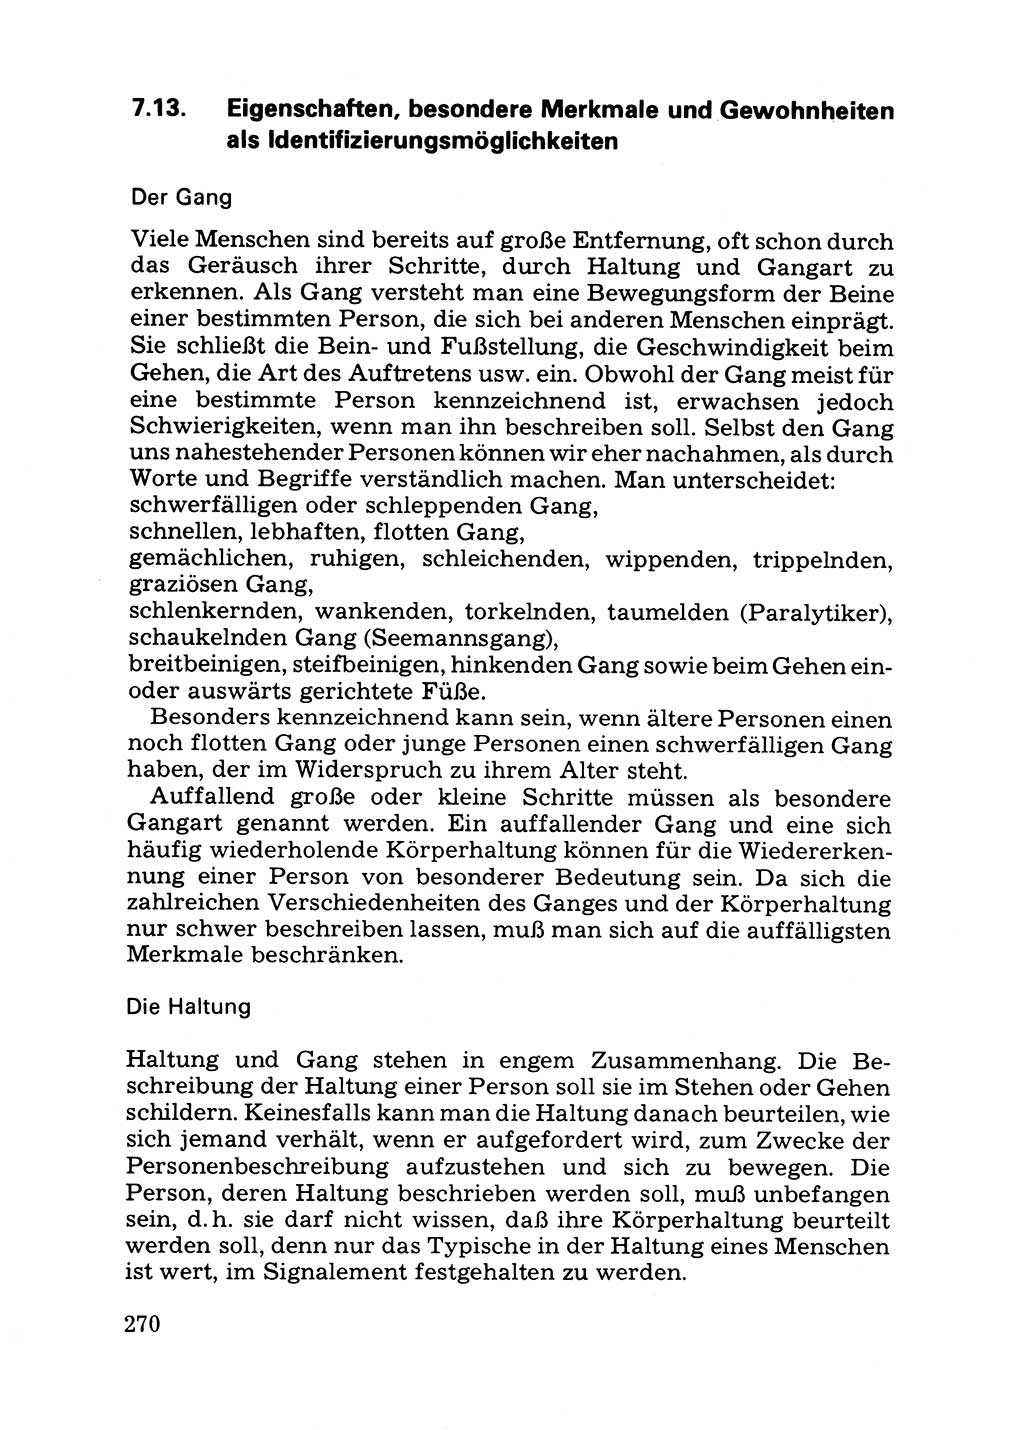 Das subjektive Porträt [Deutsche Demokratische Republik (DDR)] 1981, Seite 270 (Subj. Port. DDR 1981, S. 270)